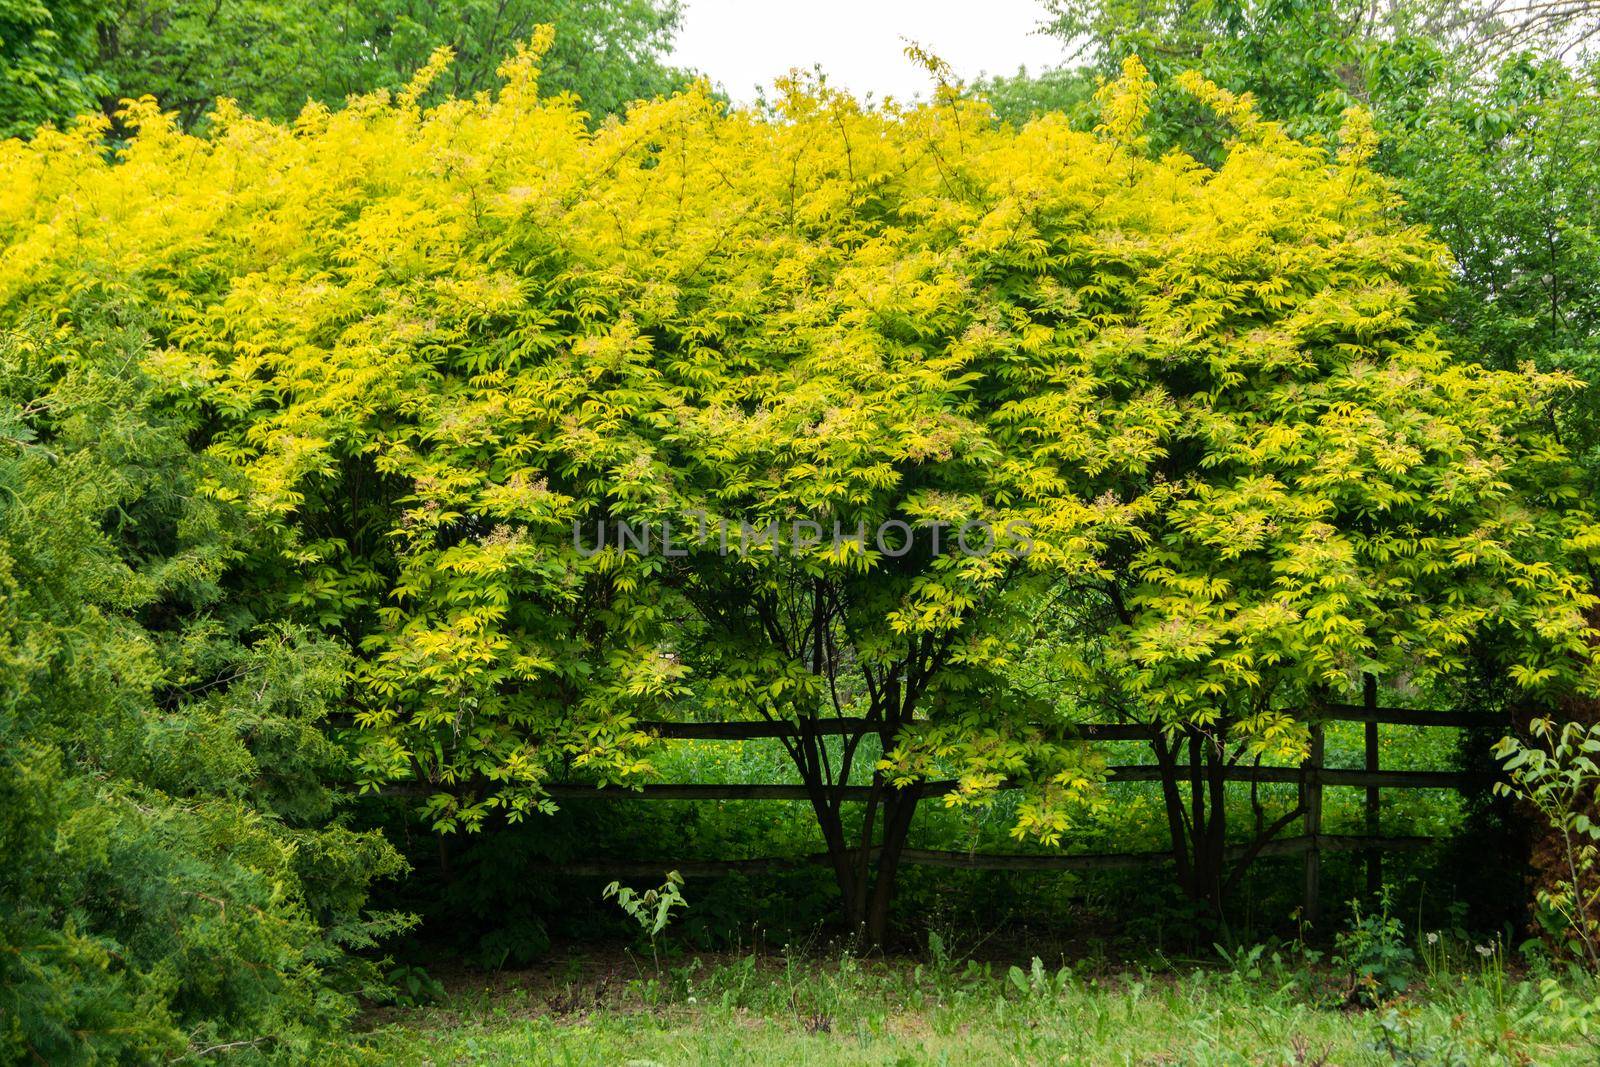 Elder tree with yellow-green leaves. Blurred focus by Serhii_Voroshchuk